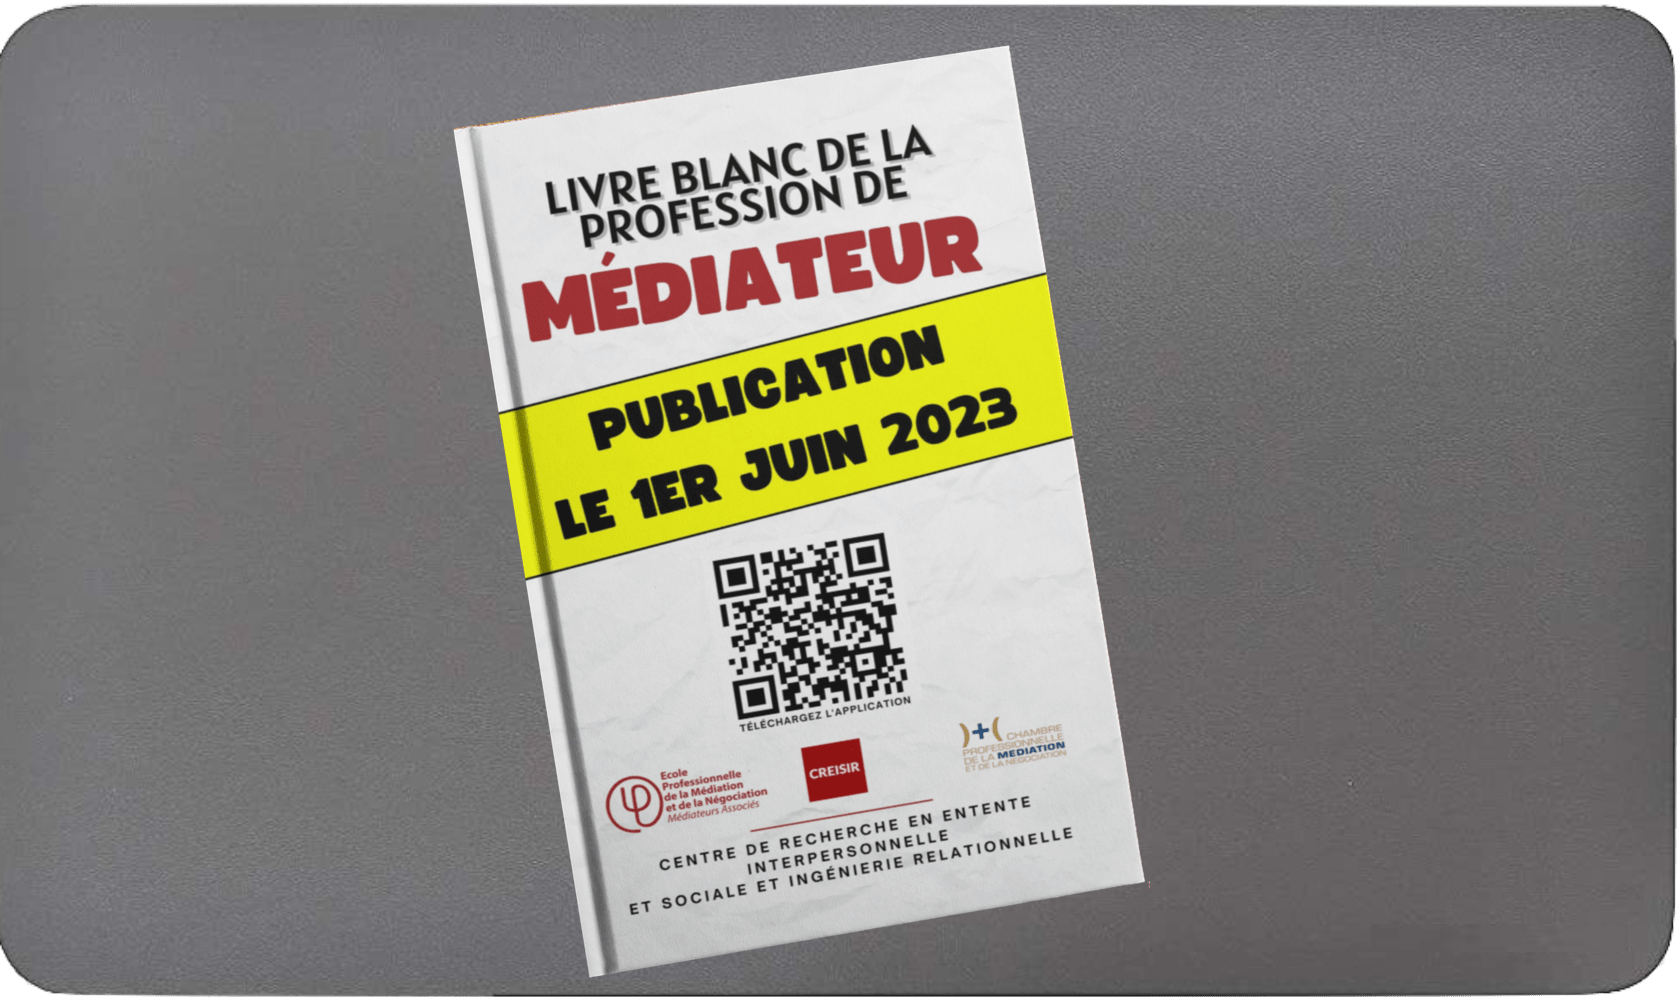 Le livre blanc de la profession de médiateur sort le 1er Juin 2023